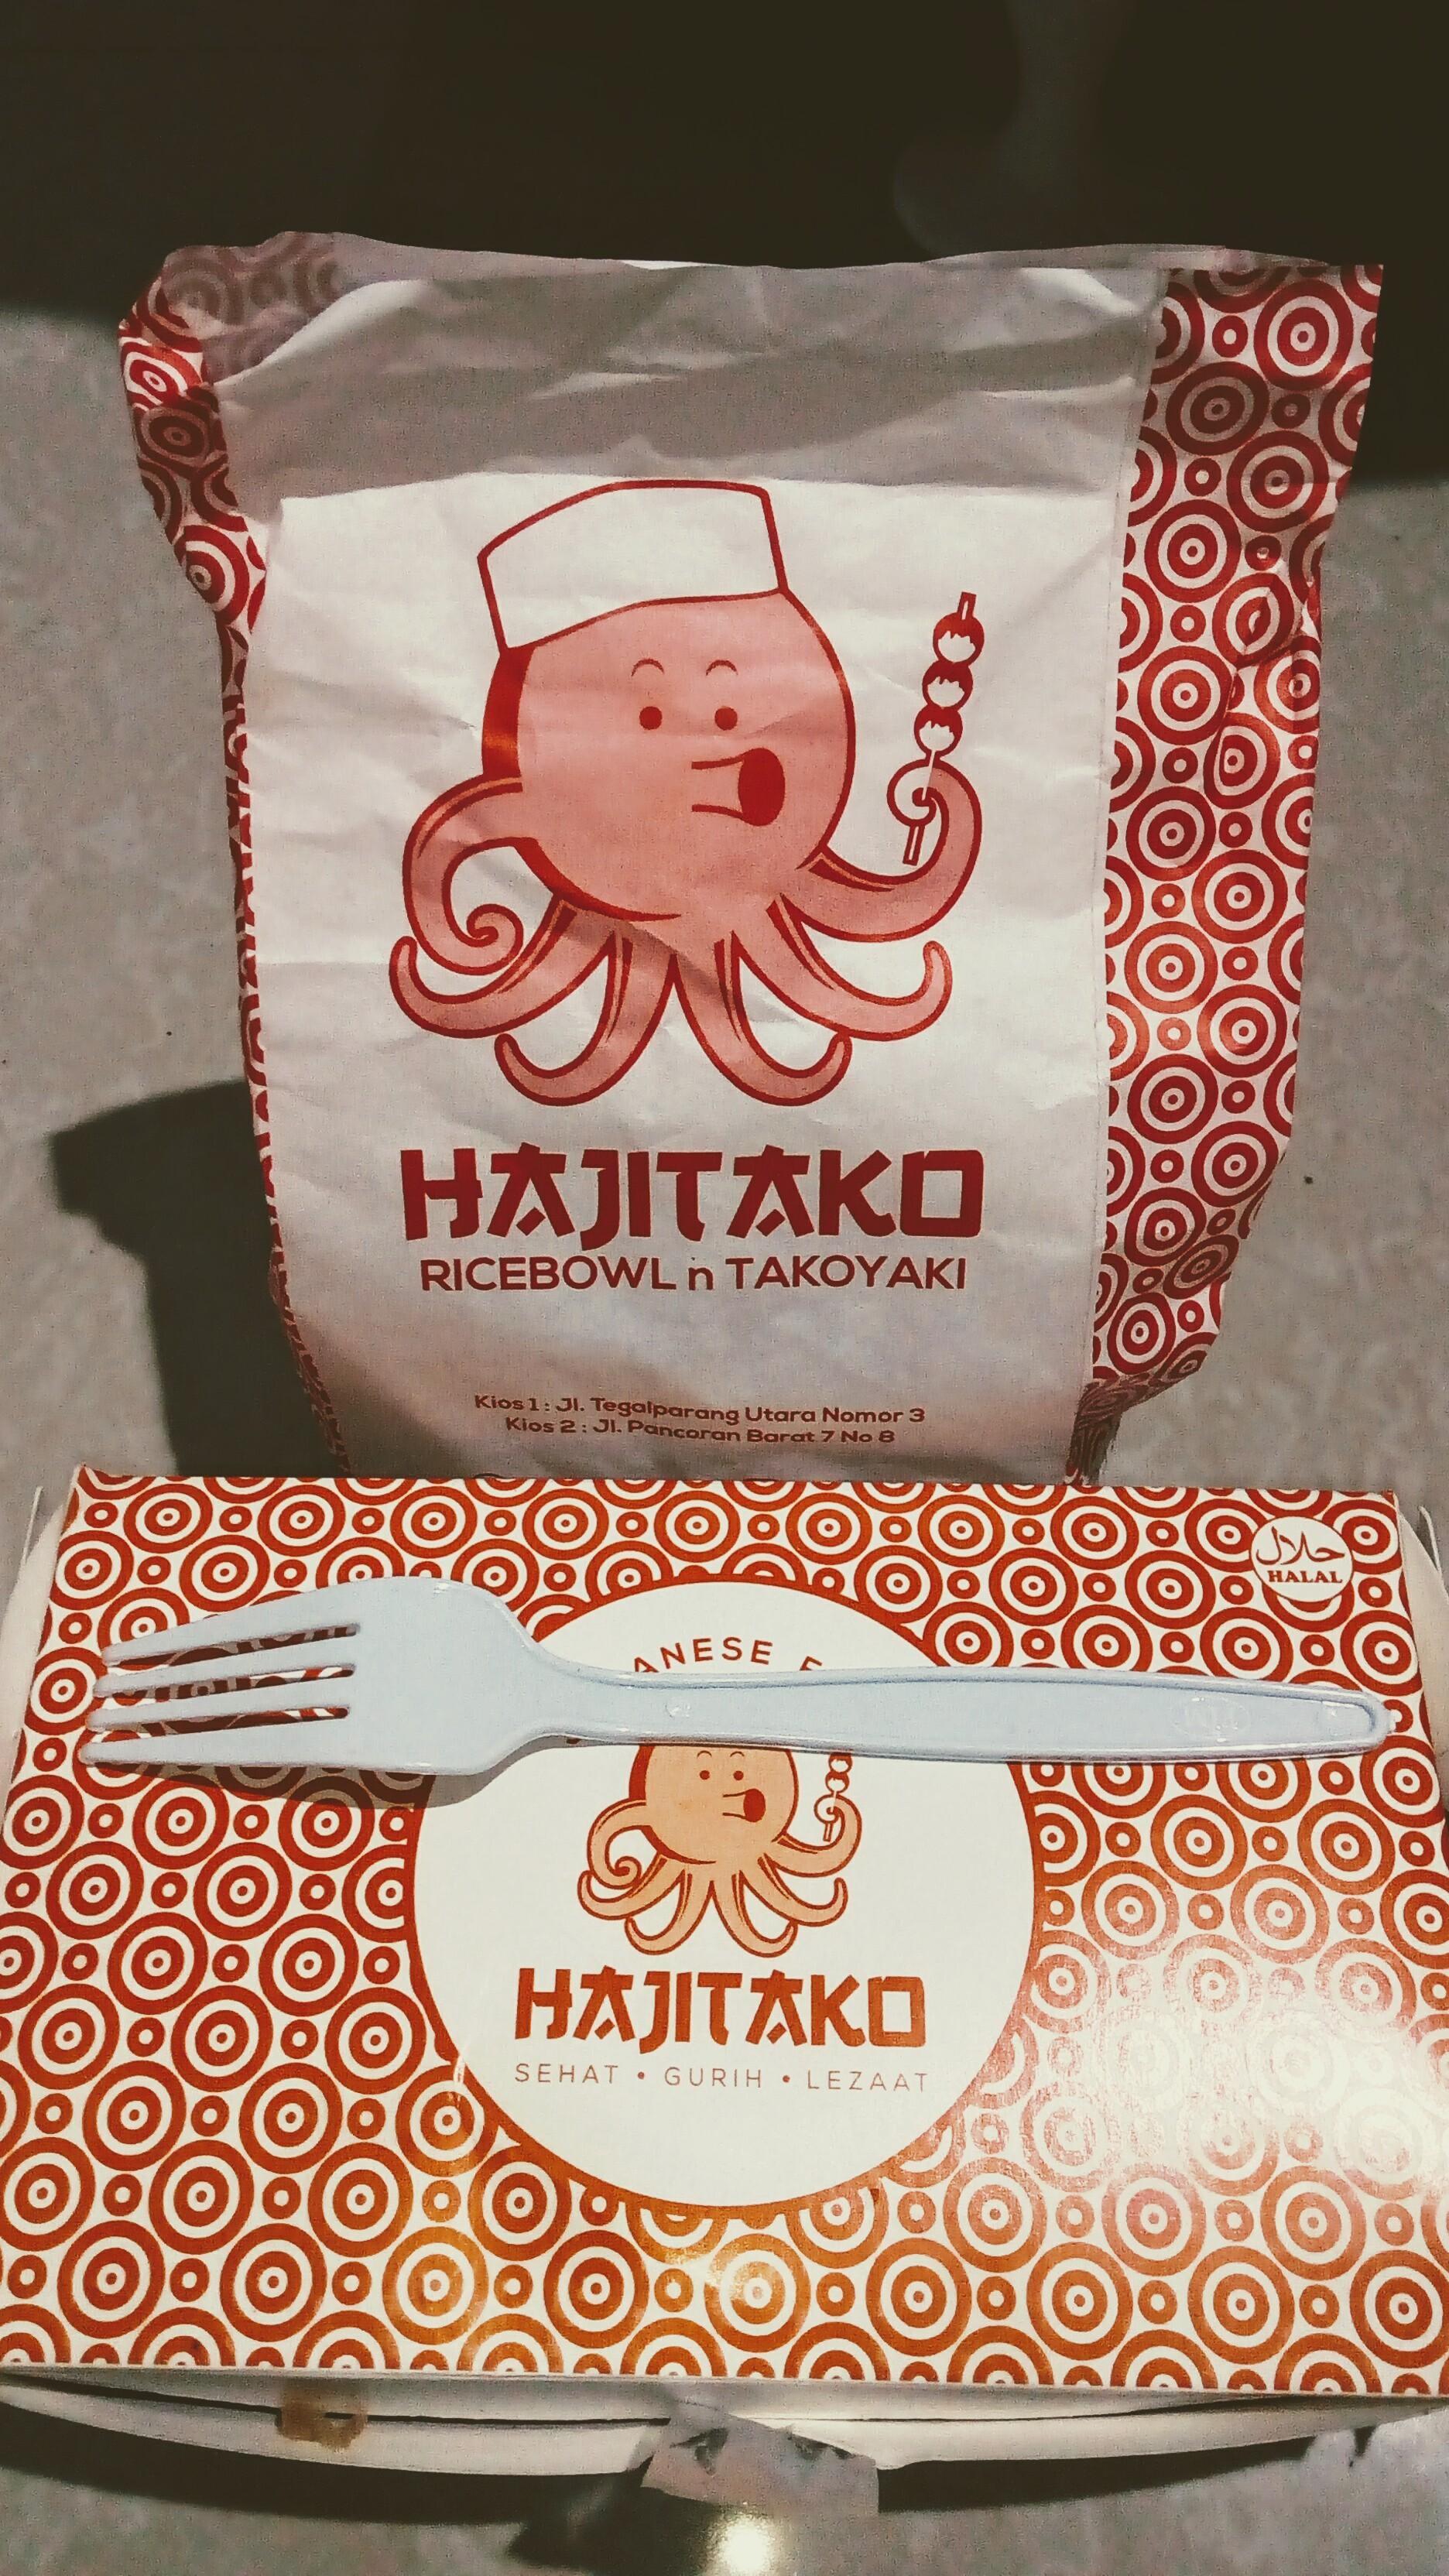 HAJITAKO JAPANESE FOOD